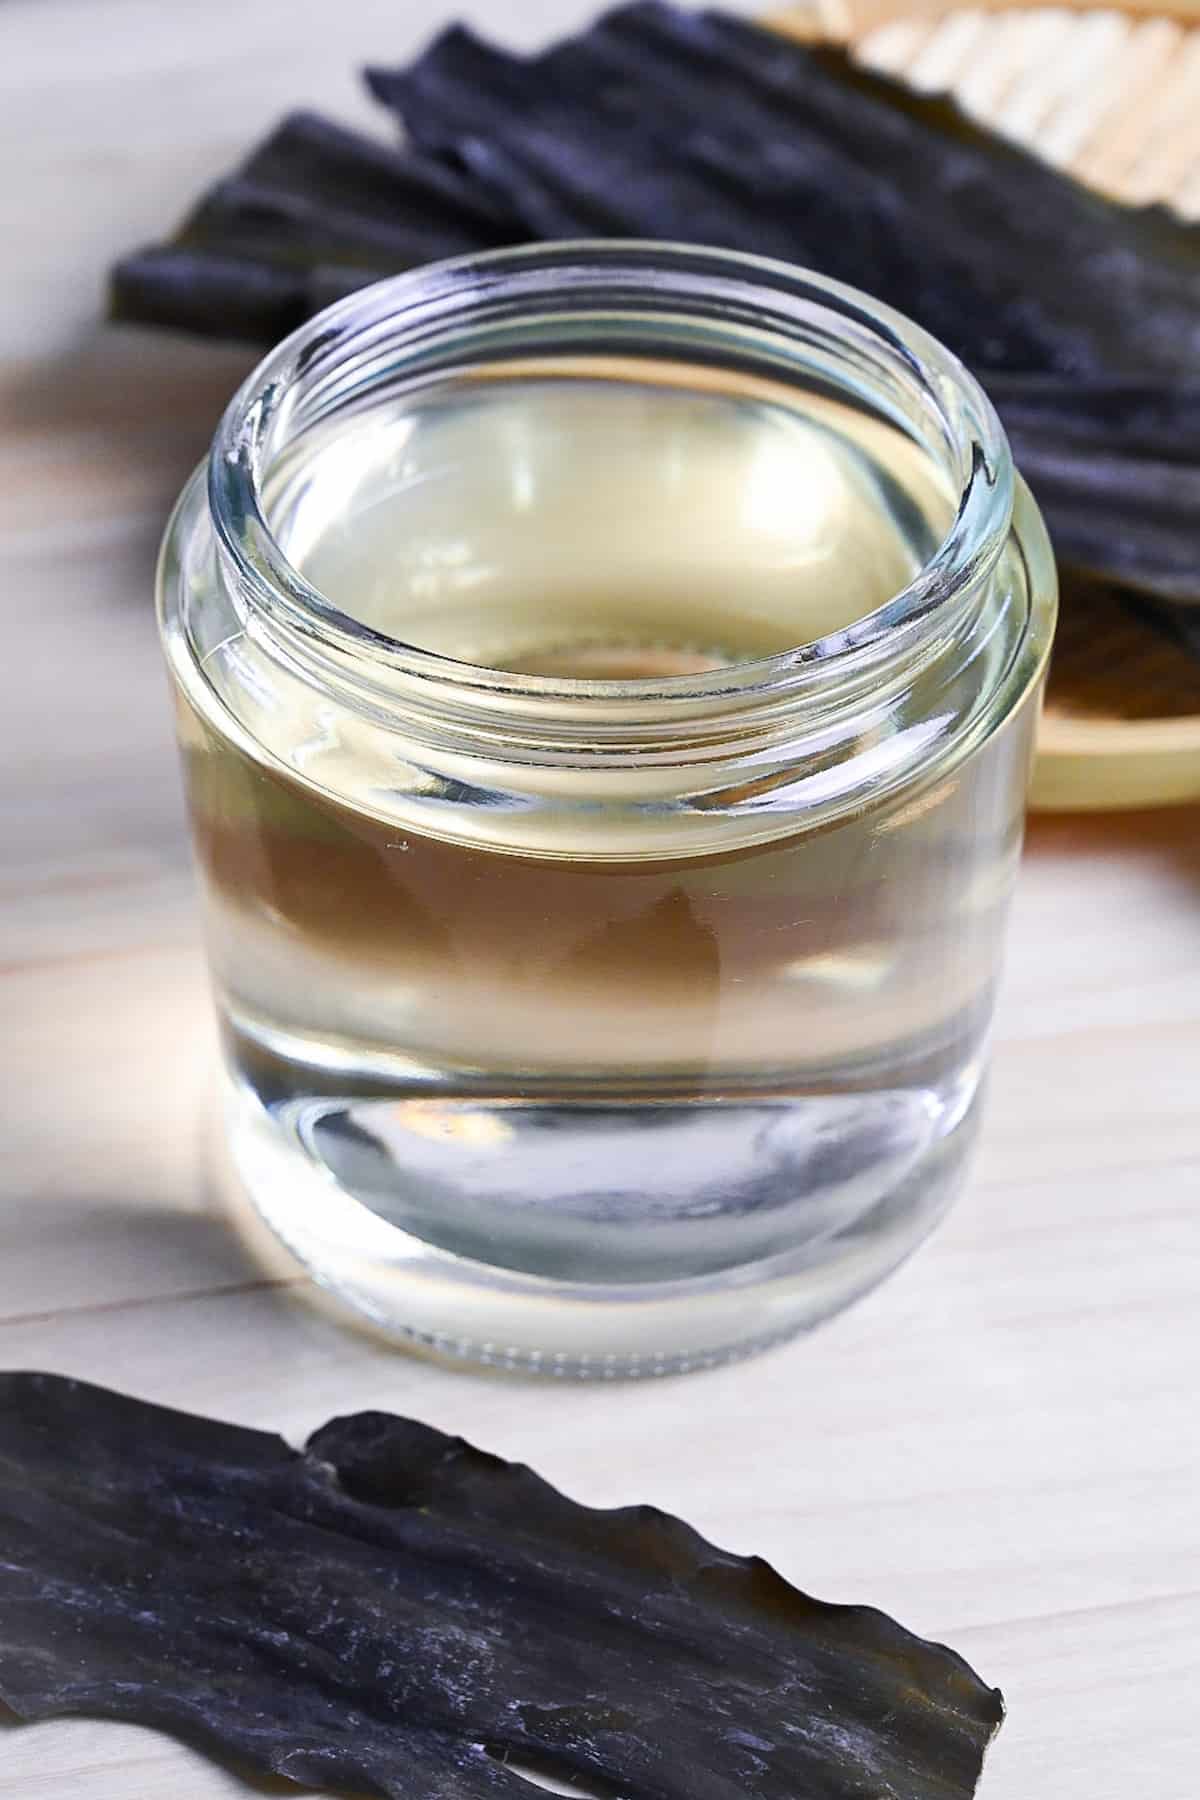 kombu dashi in a glass jar